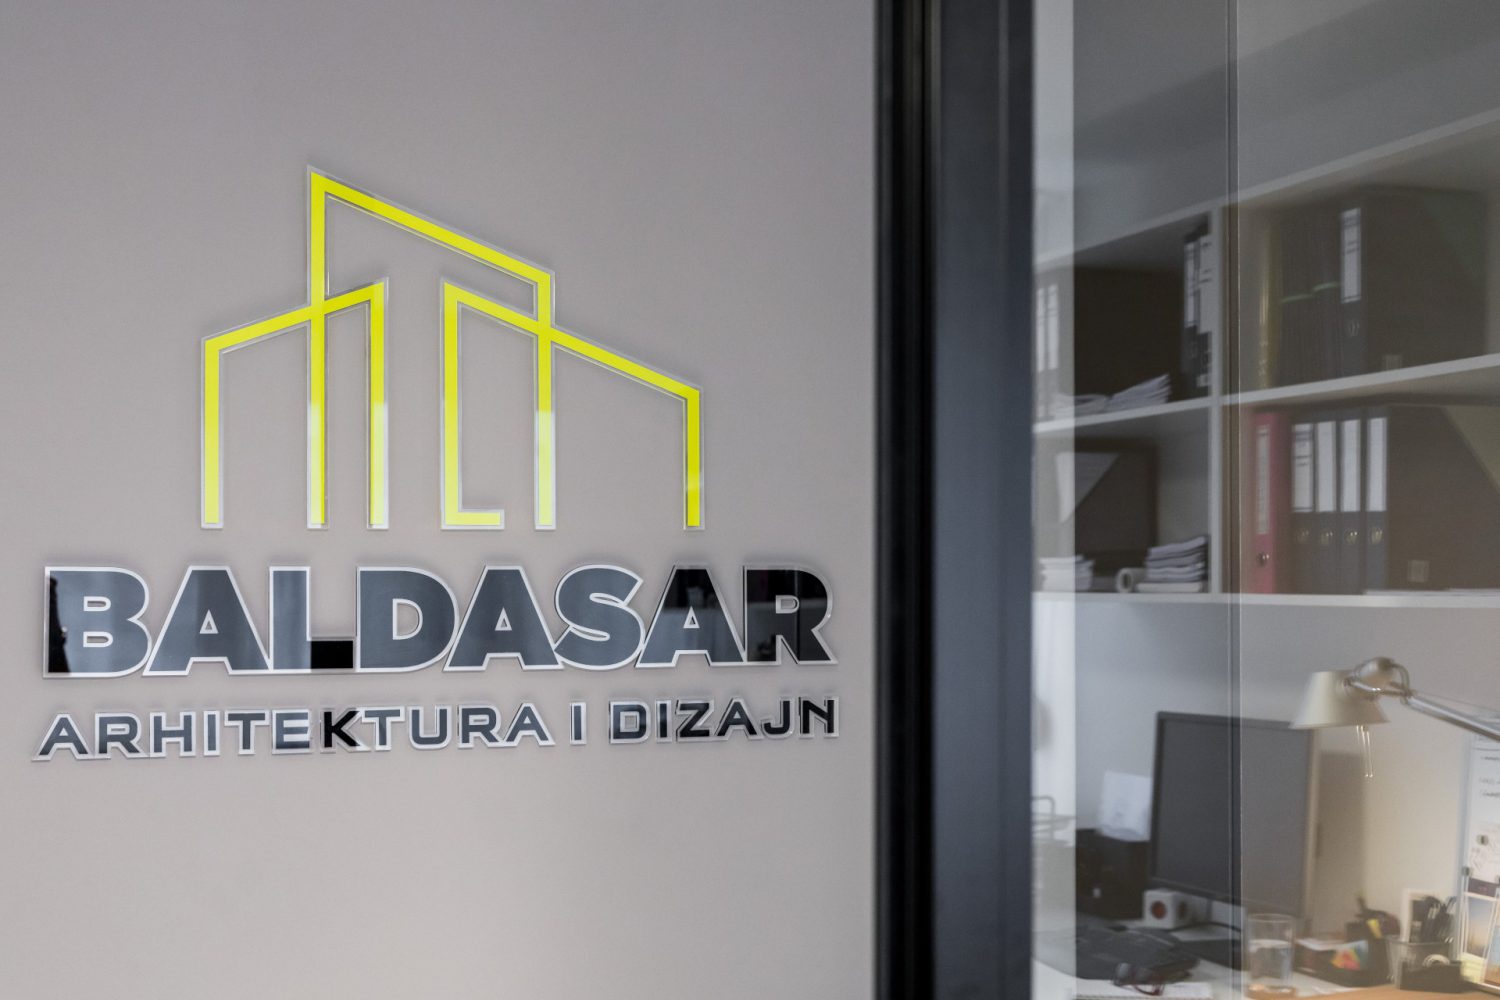 Baldasar arhitektura i dizajn - BAD office - Split